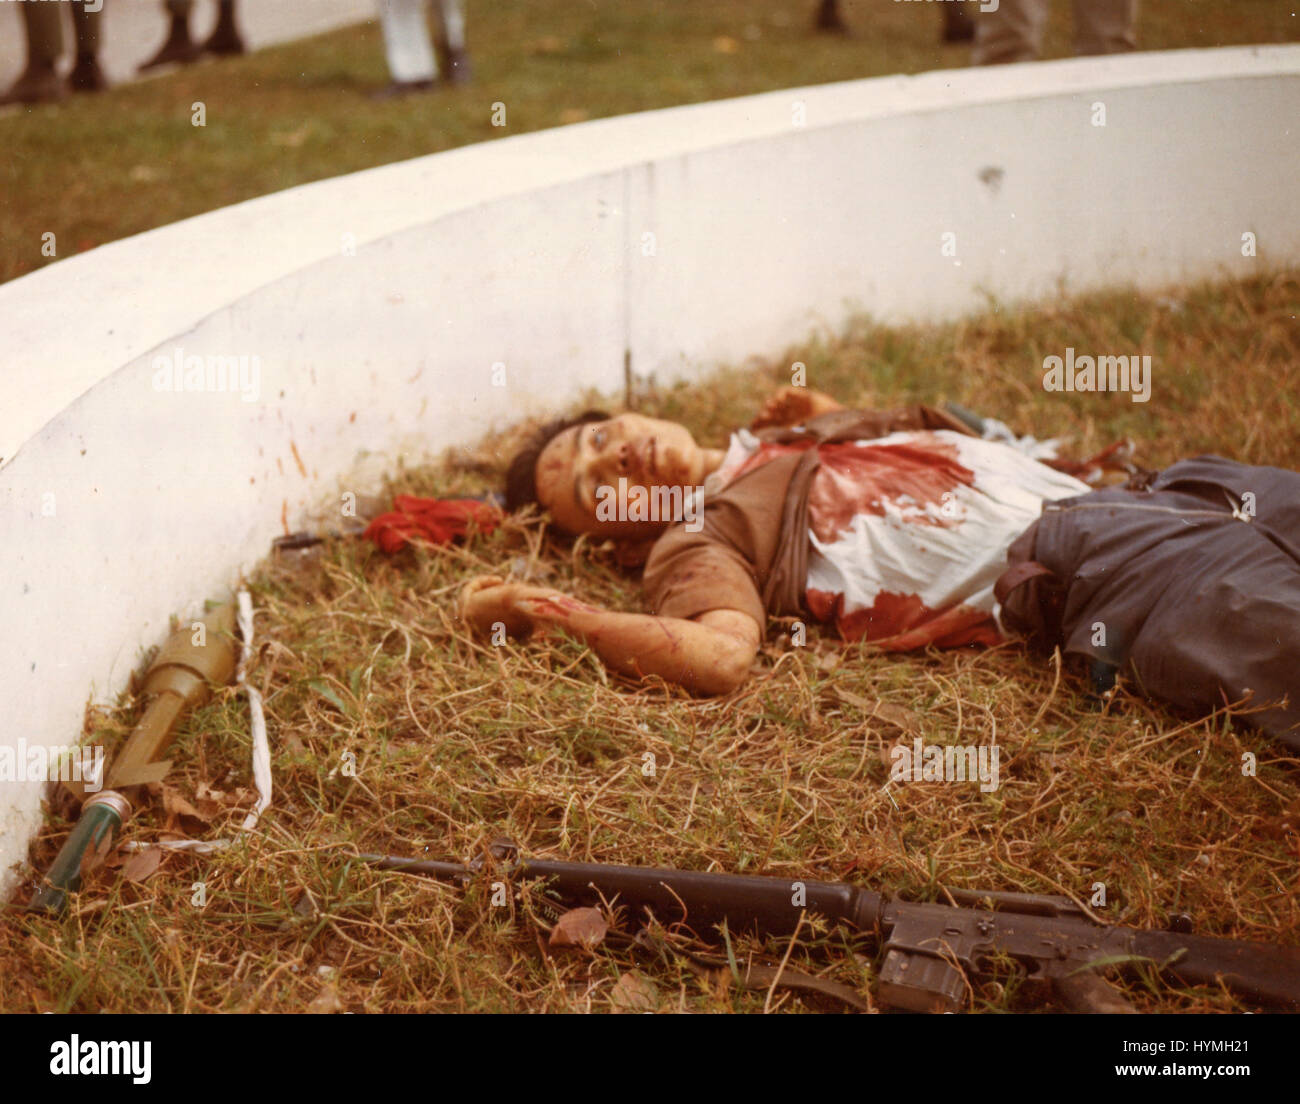 Un Viet Cong morts avec ses armes à proximité se trouve sur le terrain de l'ambassade américaine après l'attaque de Tet. Saigon, la République du Vietnam. 31 janvier 1968. Banque D'Images